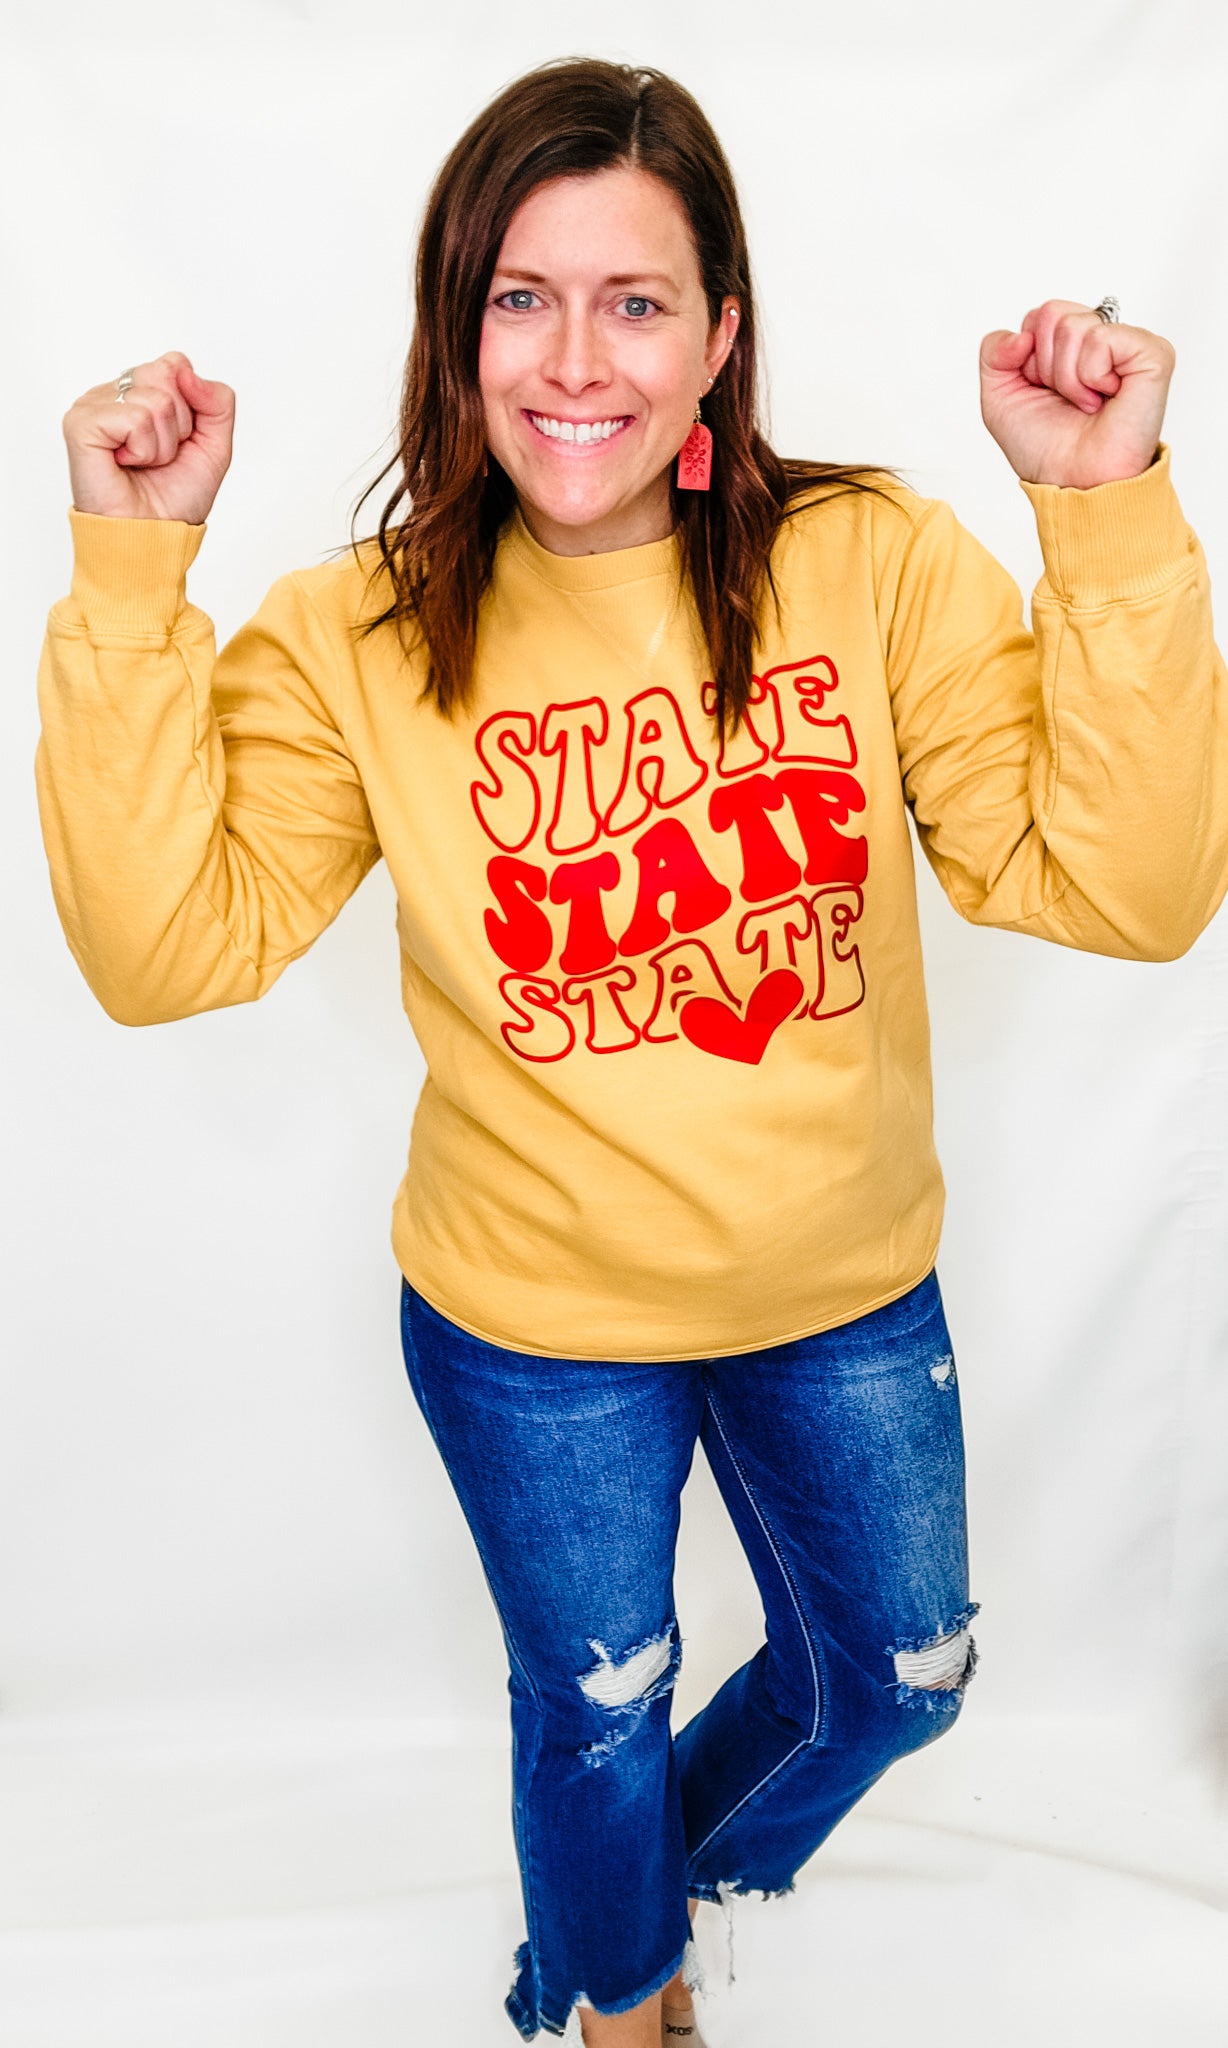 Iowa or Iowa State Love Crew Neck Sweatshirts